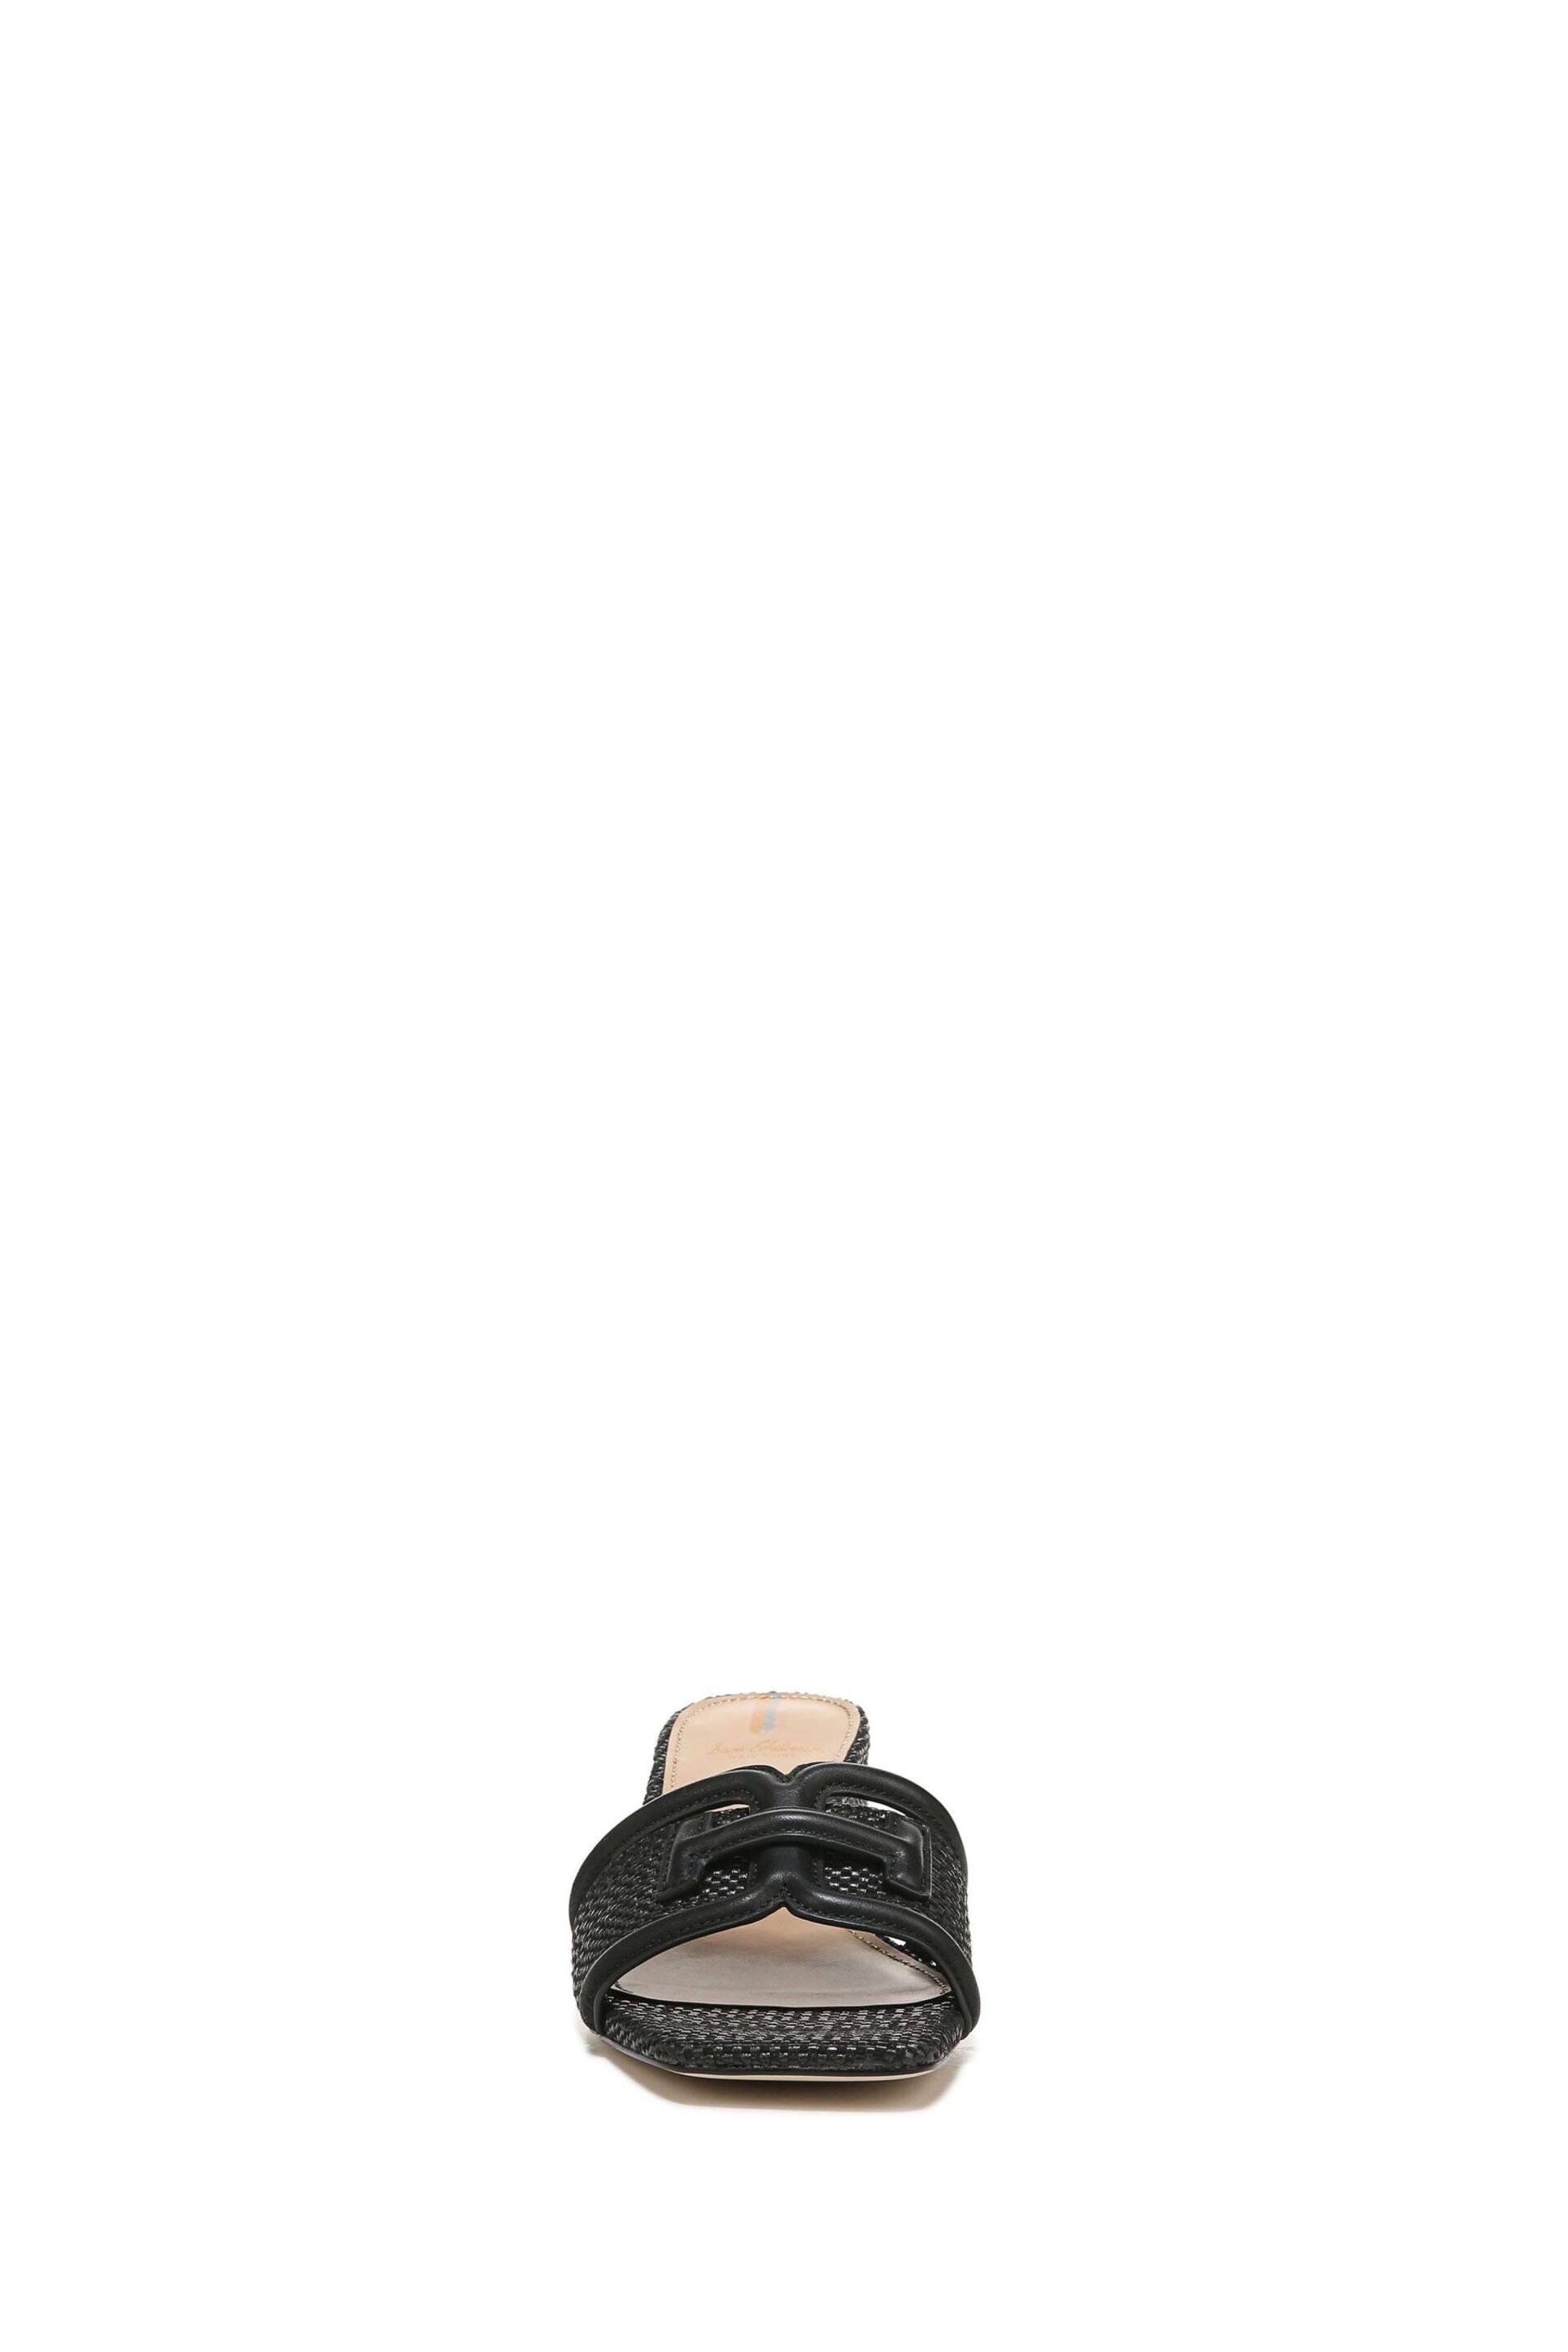 Sam Edelman Waylon Slider Sandals - Image 4 of 6